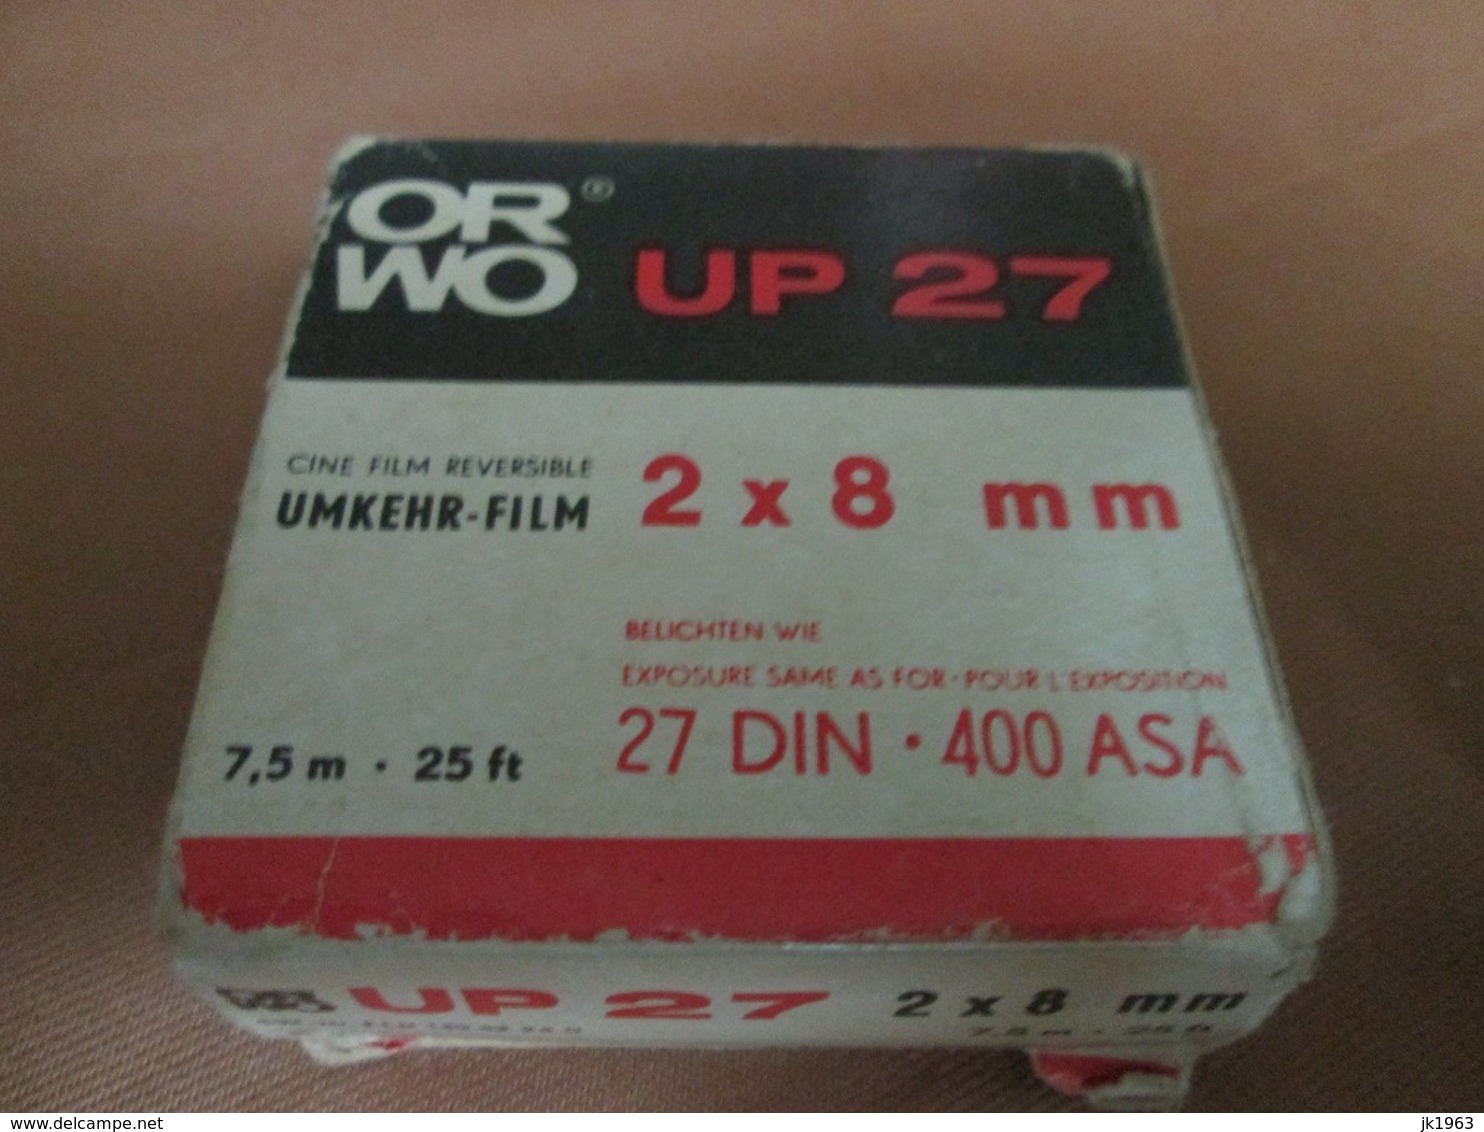 ORWO UP27  2x8mm 7,5m-25ft 25DIN 400ASA UMKHER- FILM - Filme: 35mm - 16mm - 9,5+8+S8mm